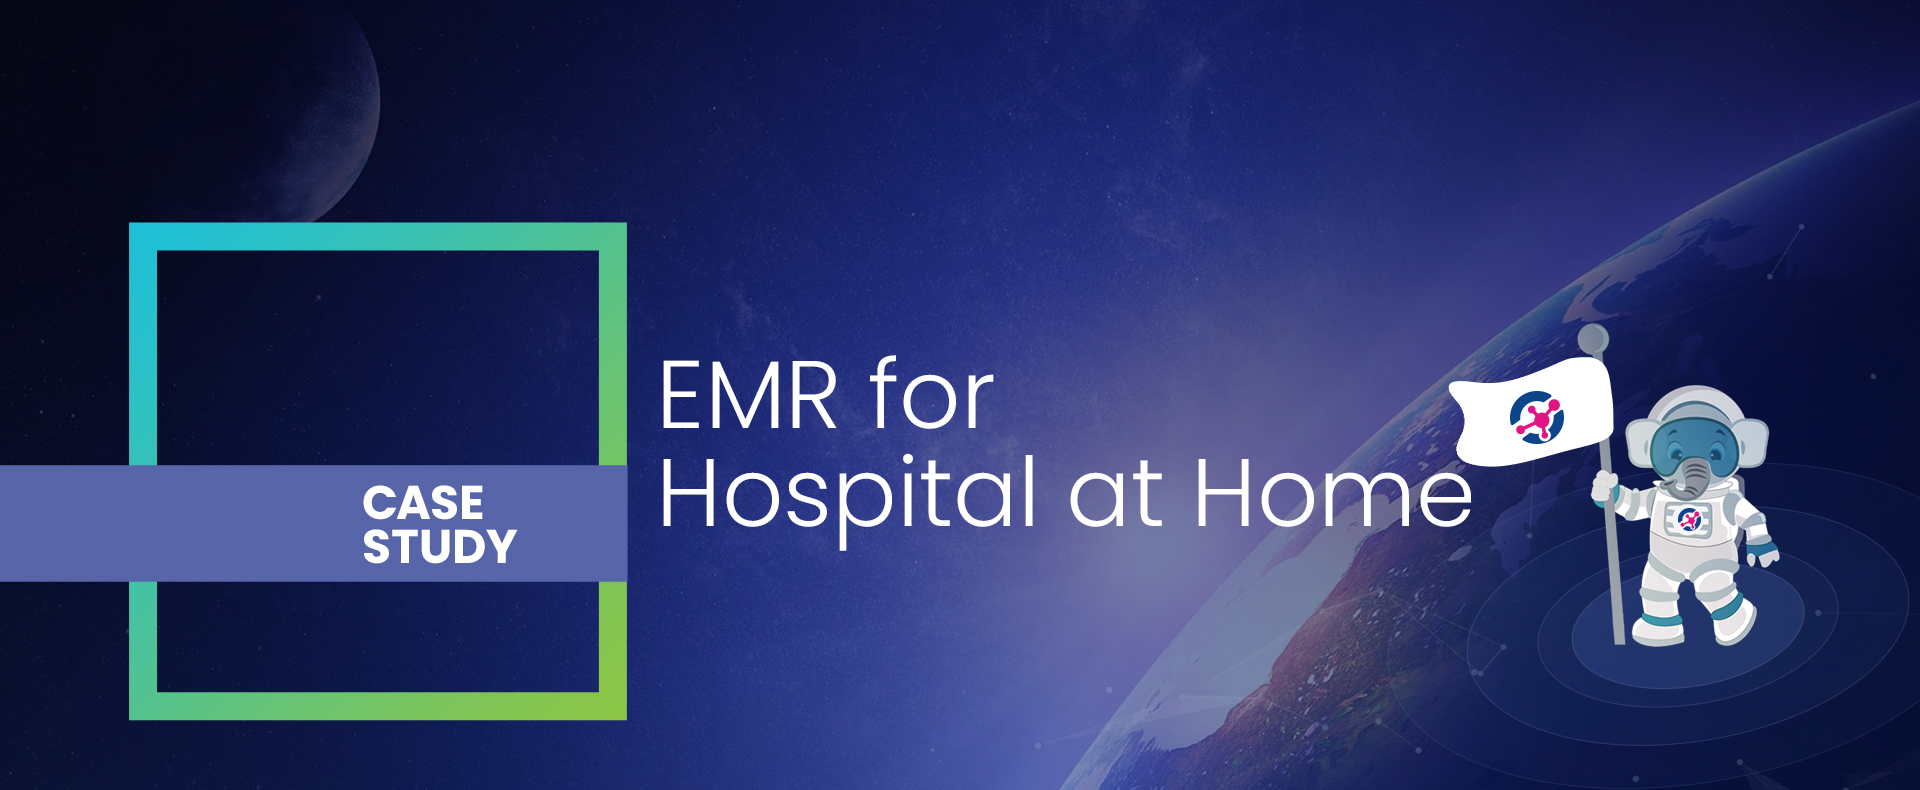 EMR for Hospital at Home